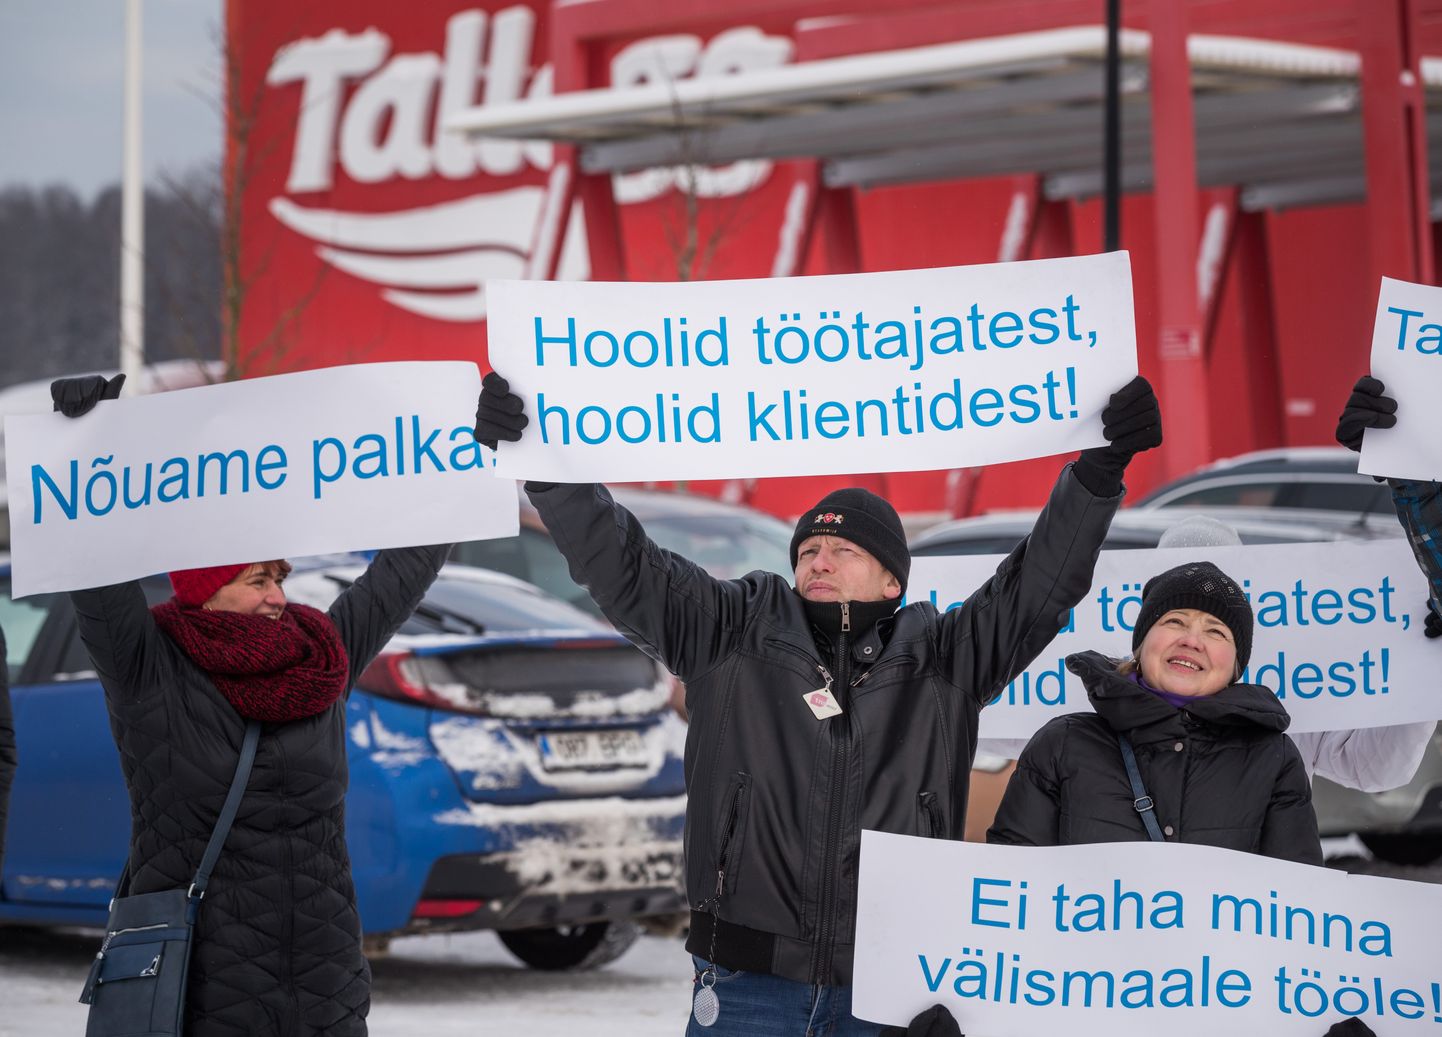 HKScani koosseisu kuuluv Tallegg näitas Rakvere lihatööstuse streigi ajal üles solidaarsust streikijate suhtes.